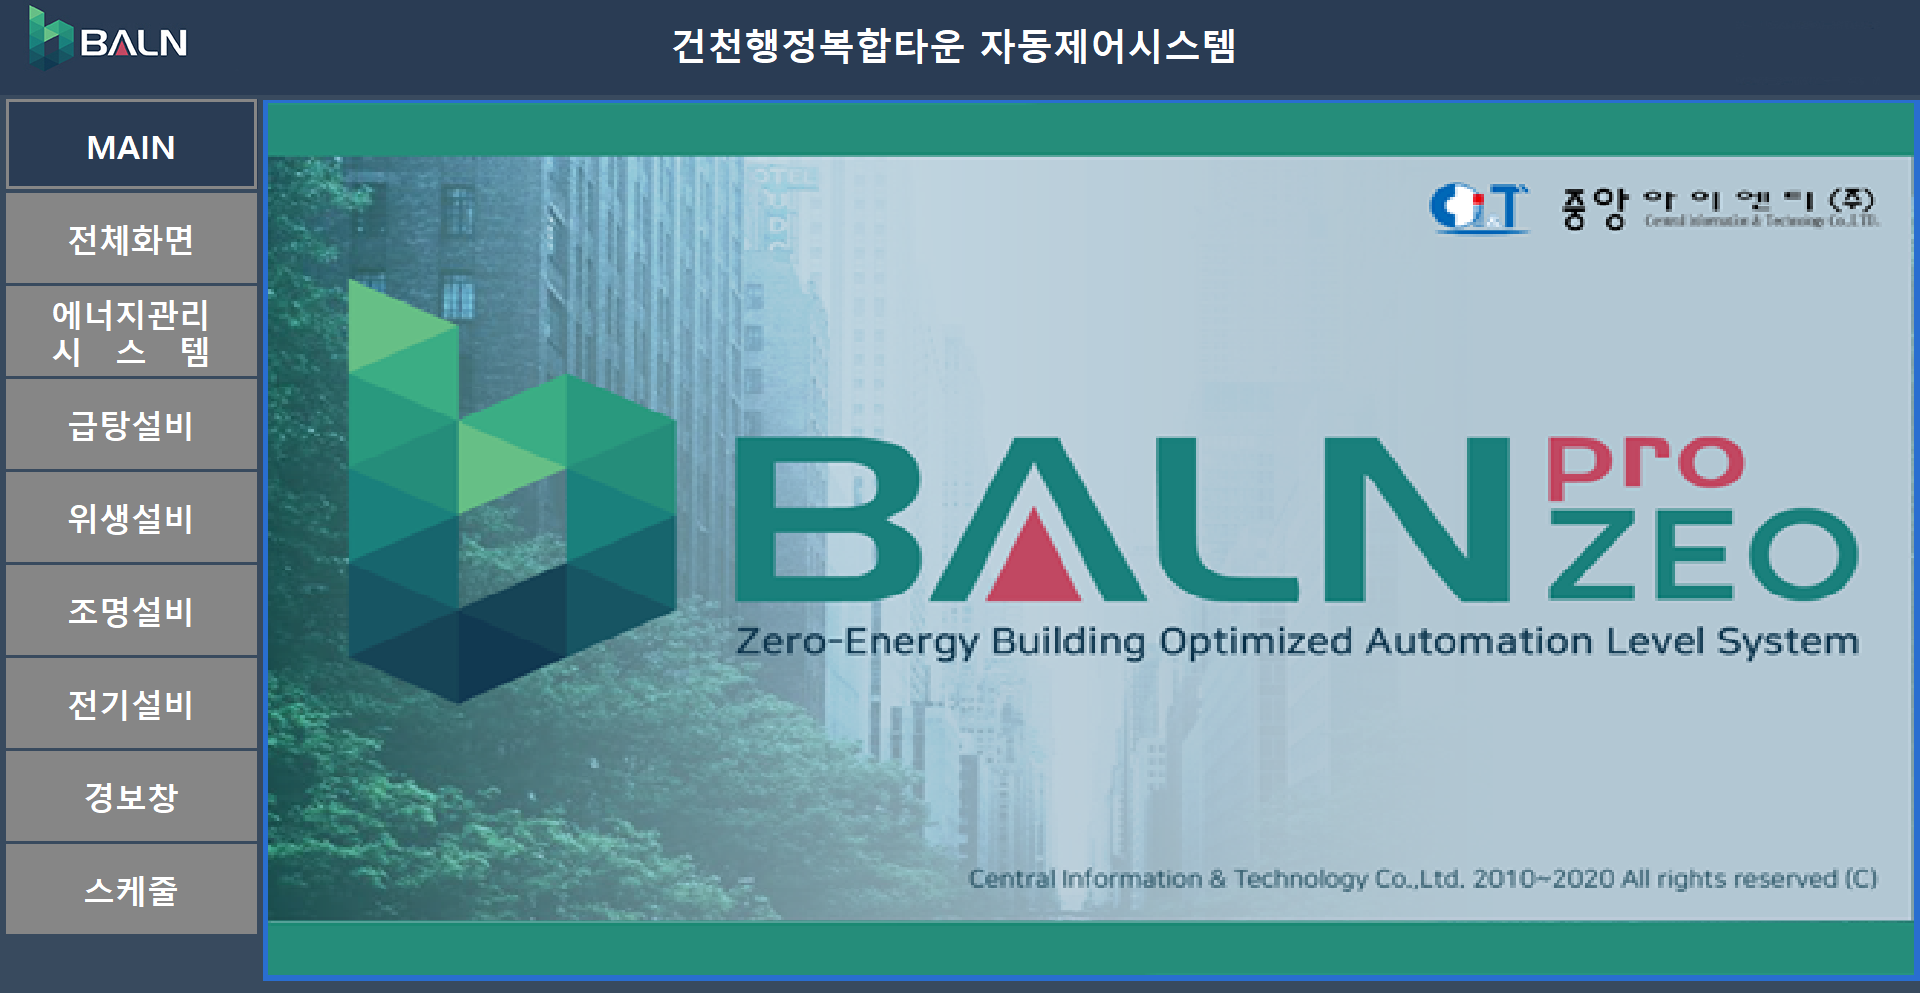 1. BALNpro-ZEOv3.2 MAIN 화면 (Copy)